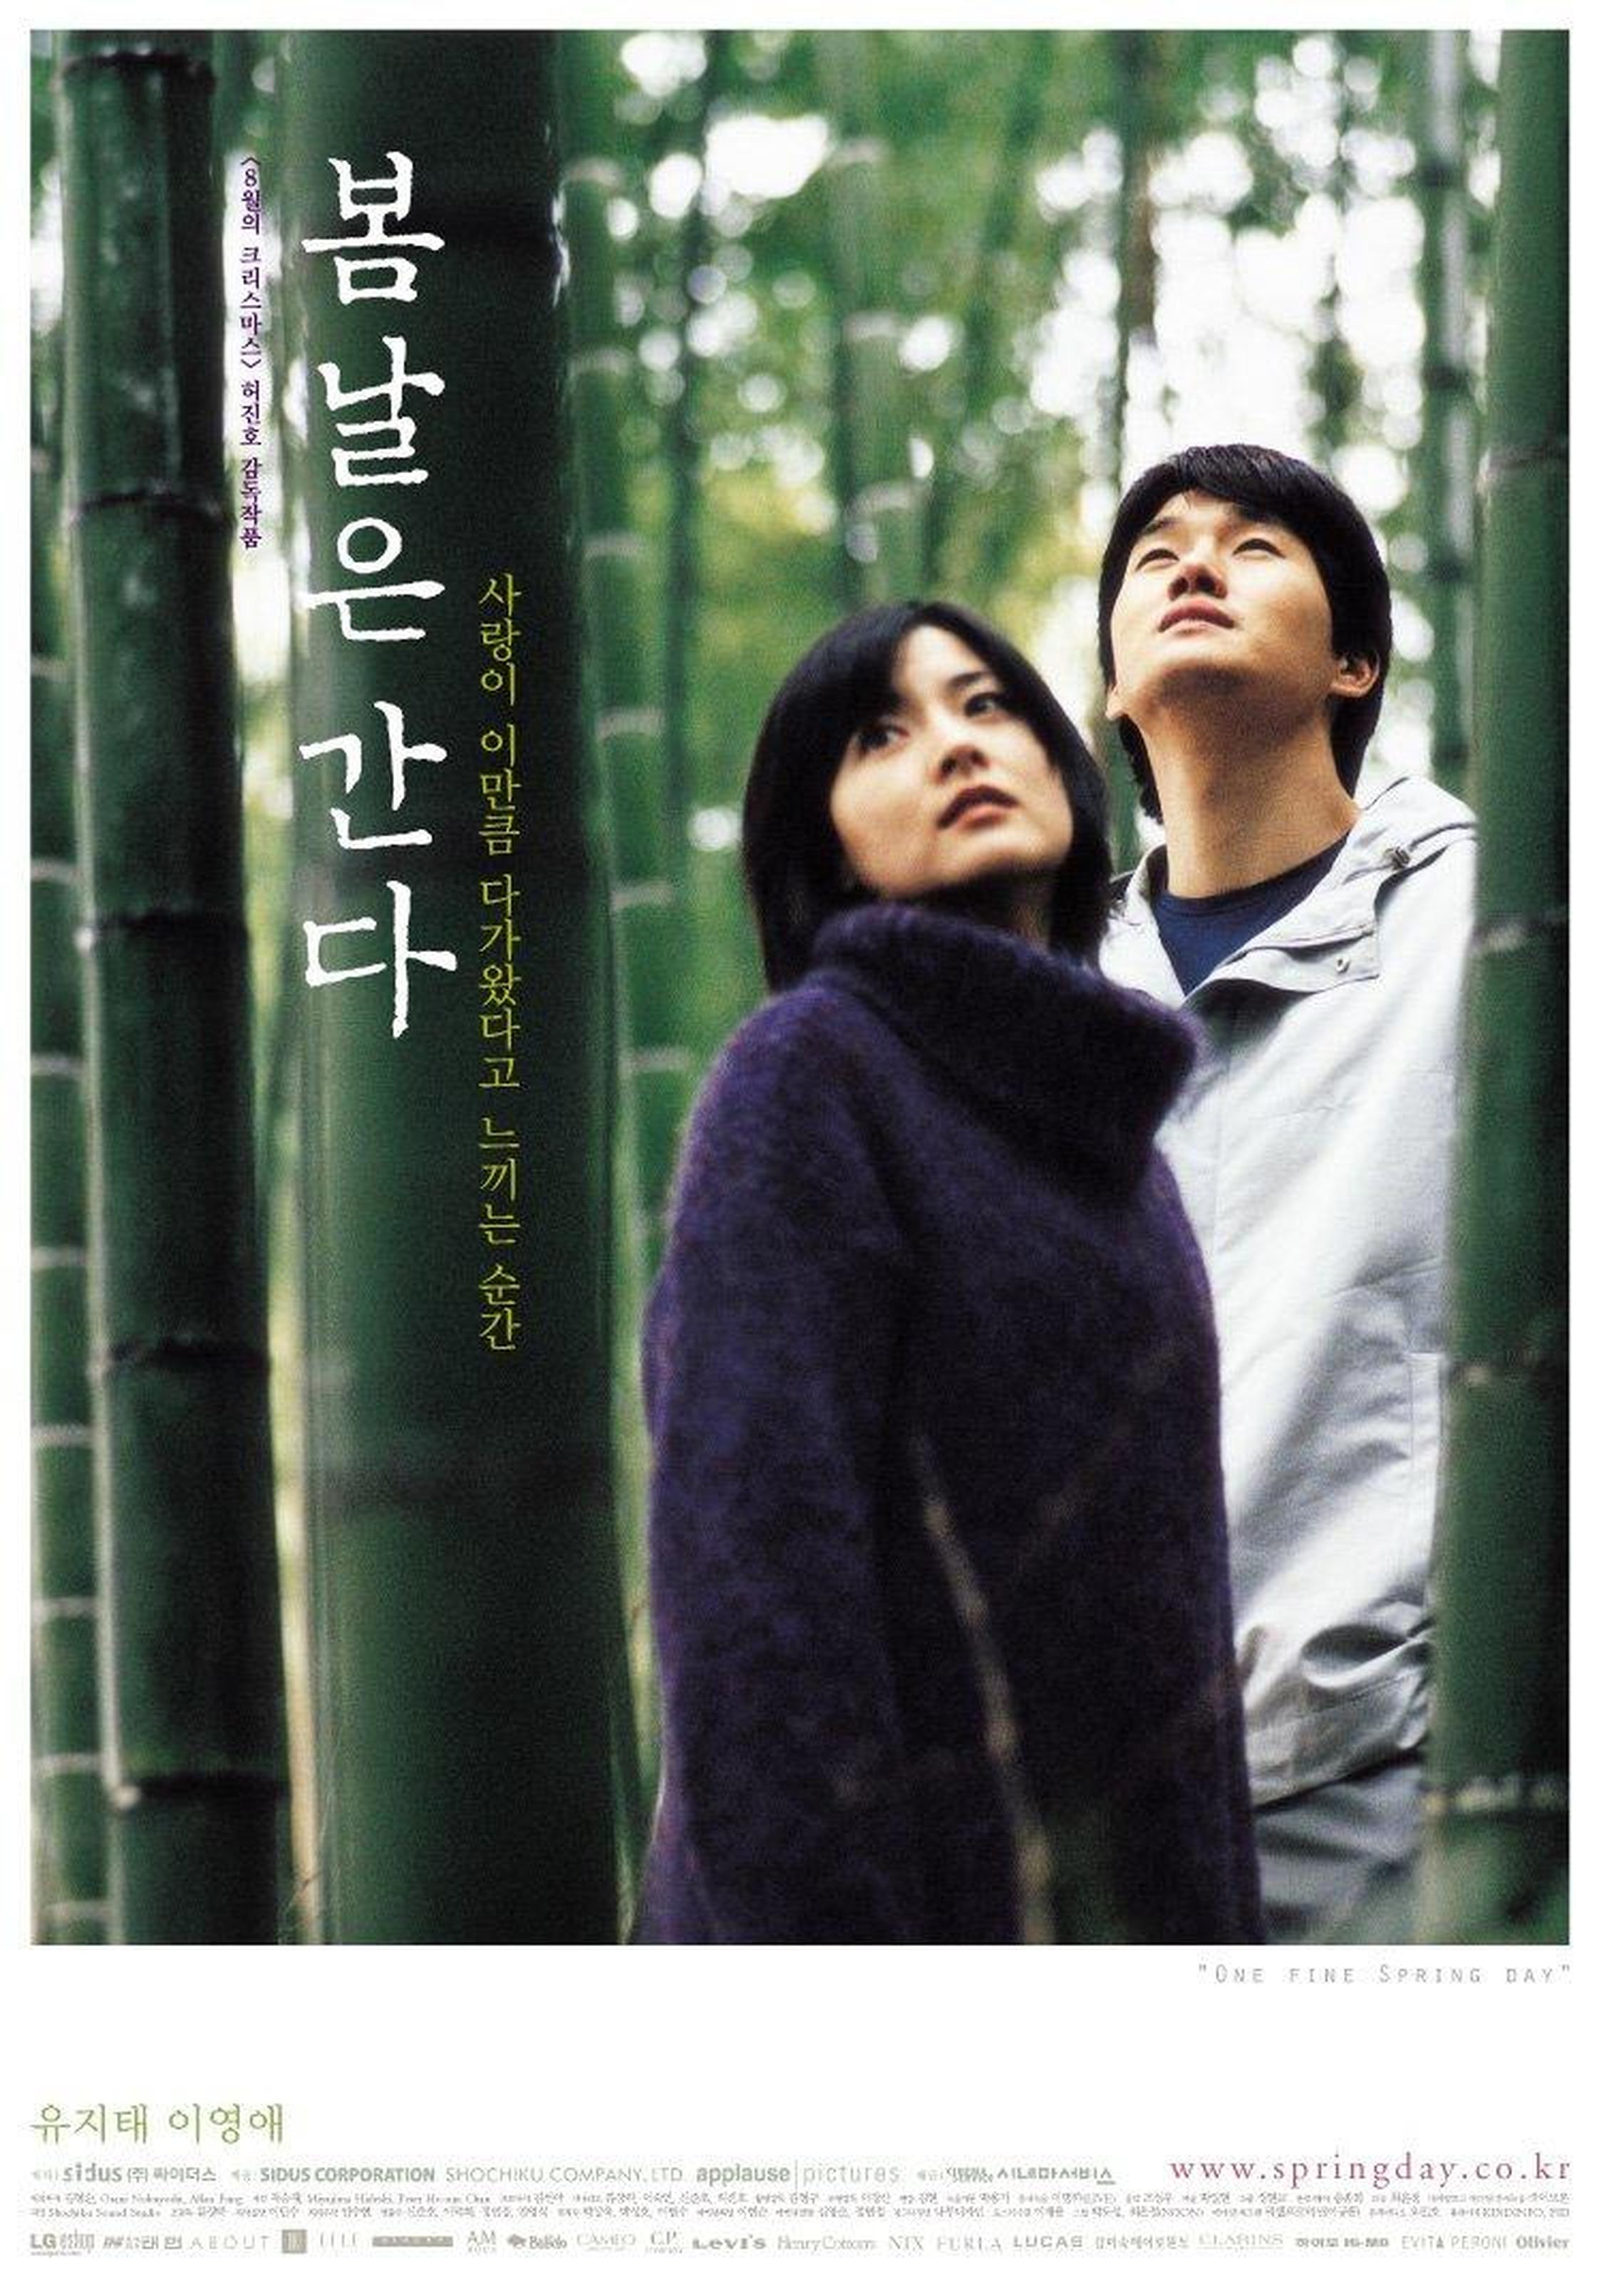 【2000-2010】《春逝》 (2001）导演许秦豪。纯爱经典。